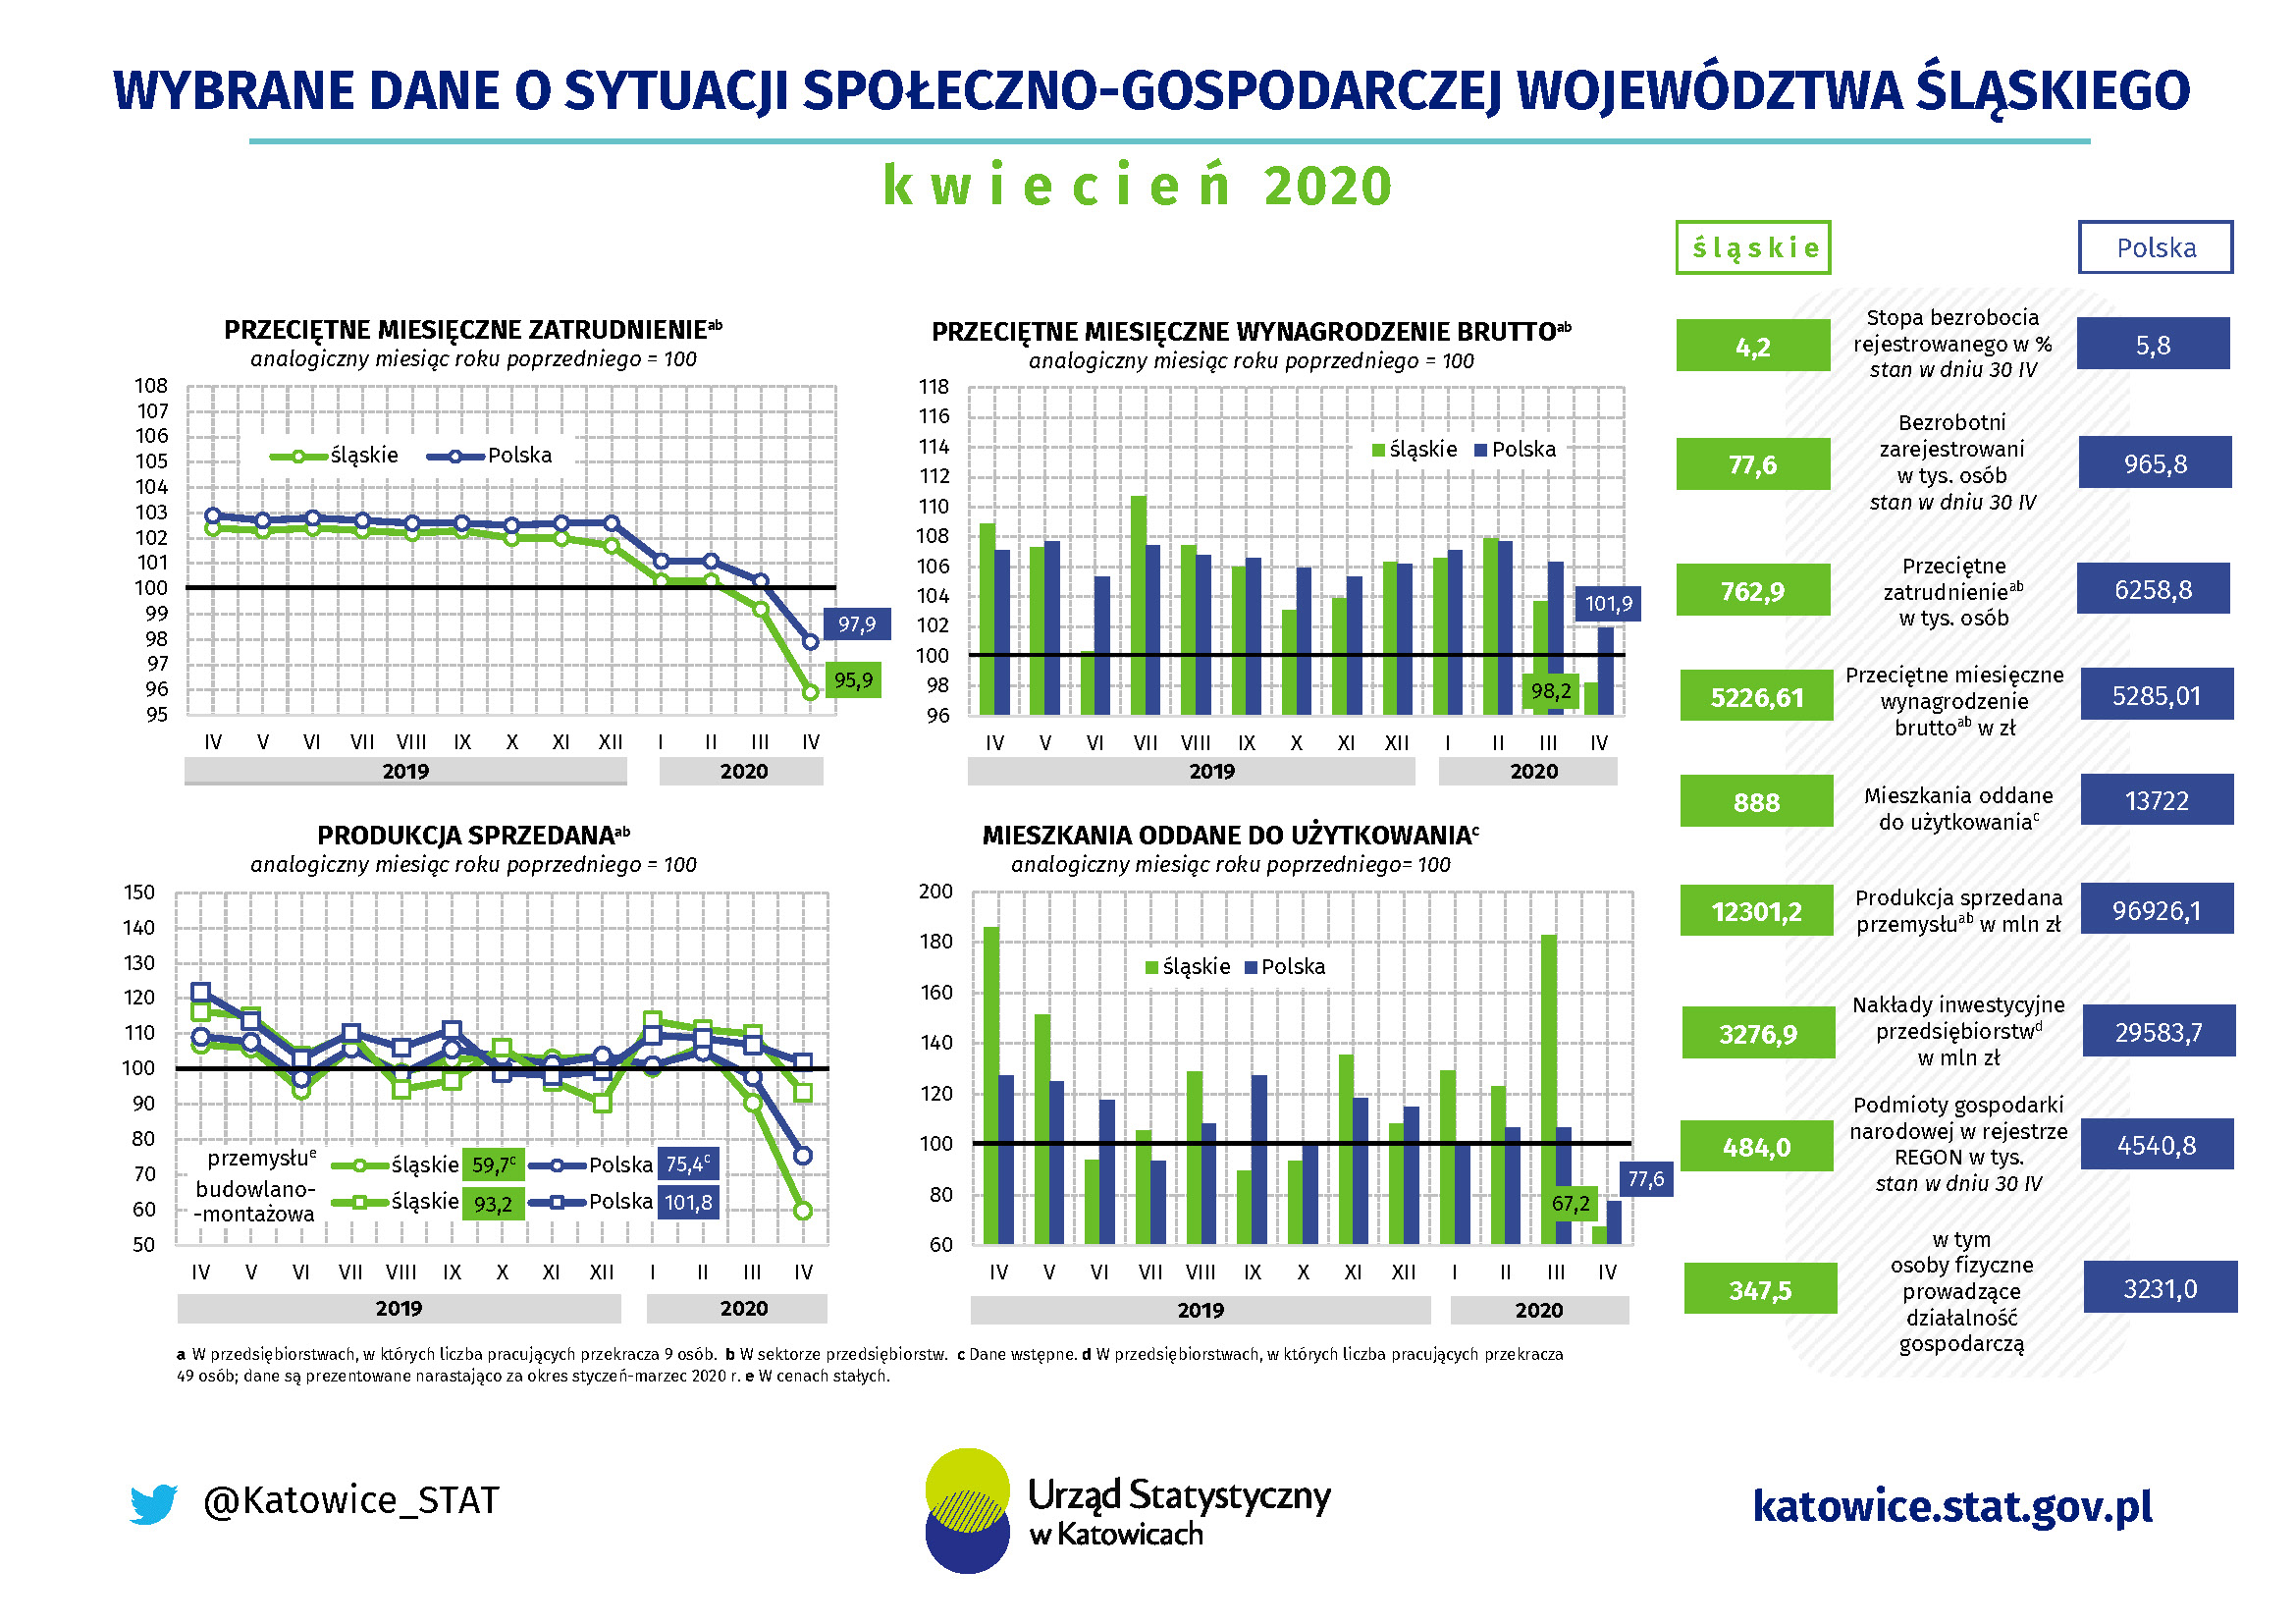 Infografika - Wybrane dane o sytuacji społeczno-gospodarczej województwa śląskiego w kwietniu 2020 r.